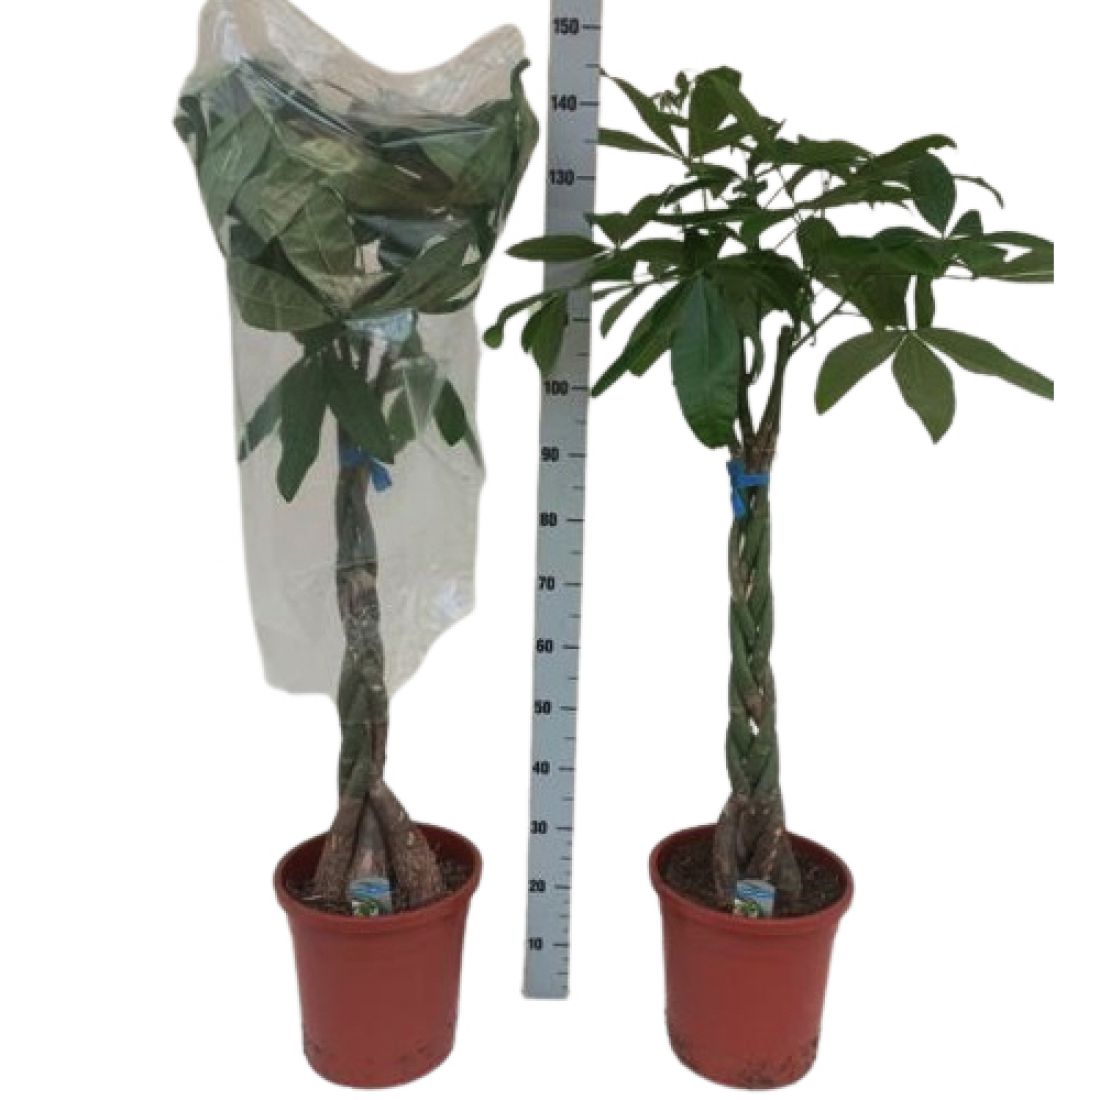 Vazoninis augalas PACHIRA (PACHIRA AQUATICA) 130 cm.